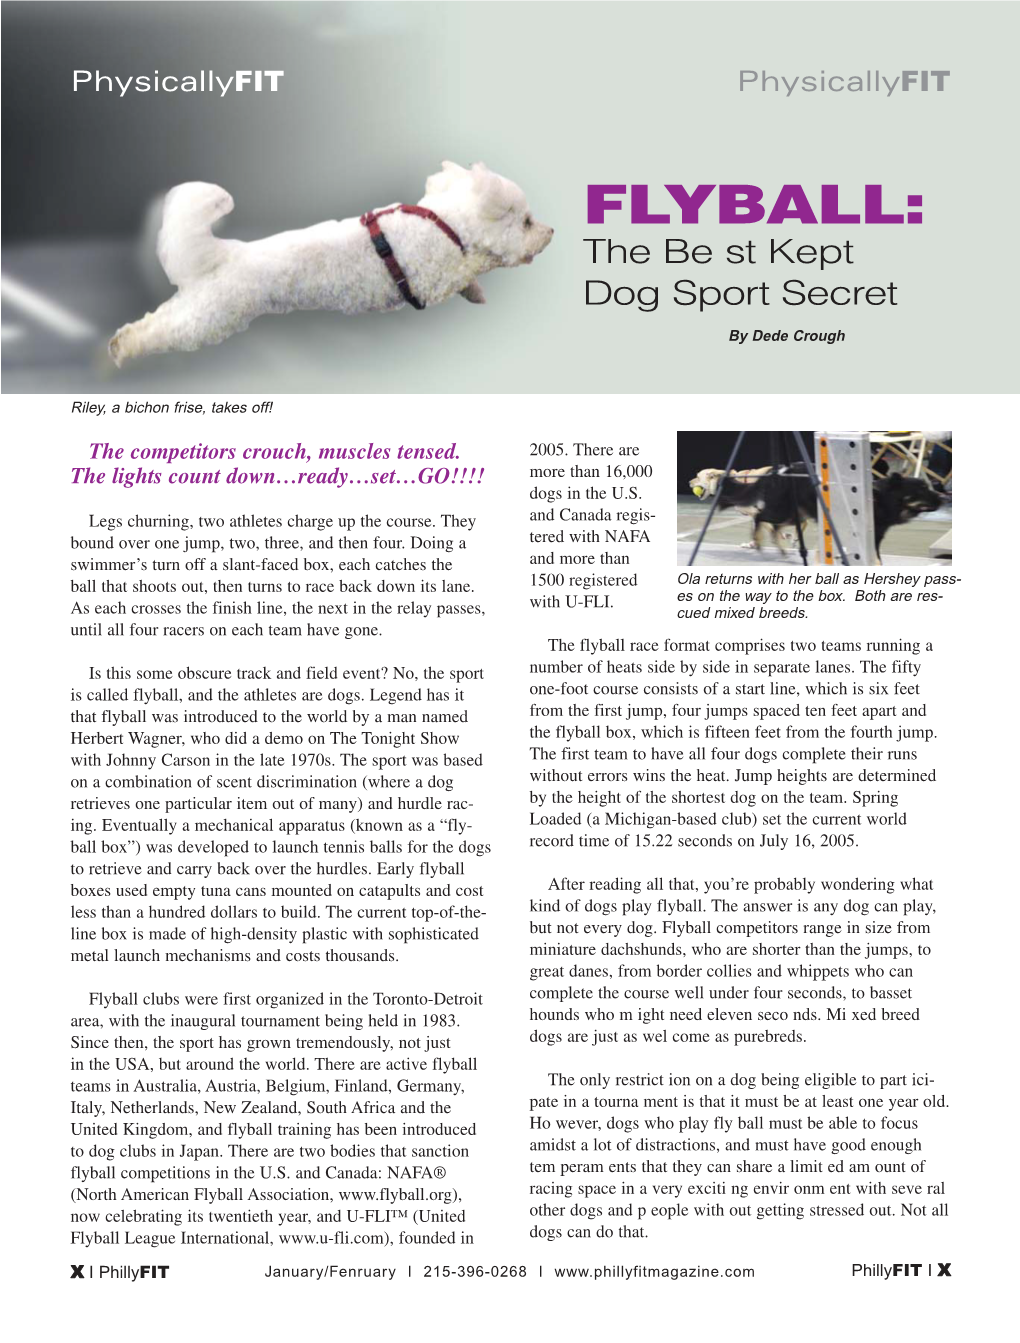 Flyball: the Best Kept Dog Sport Secret